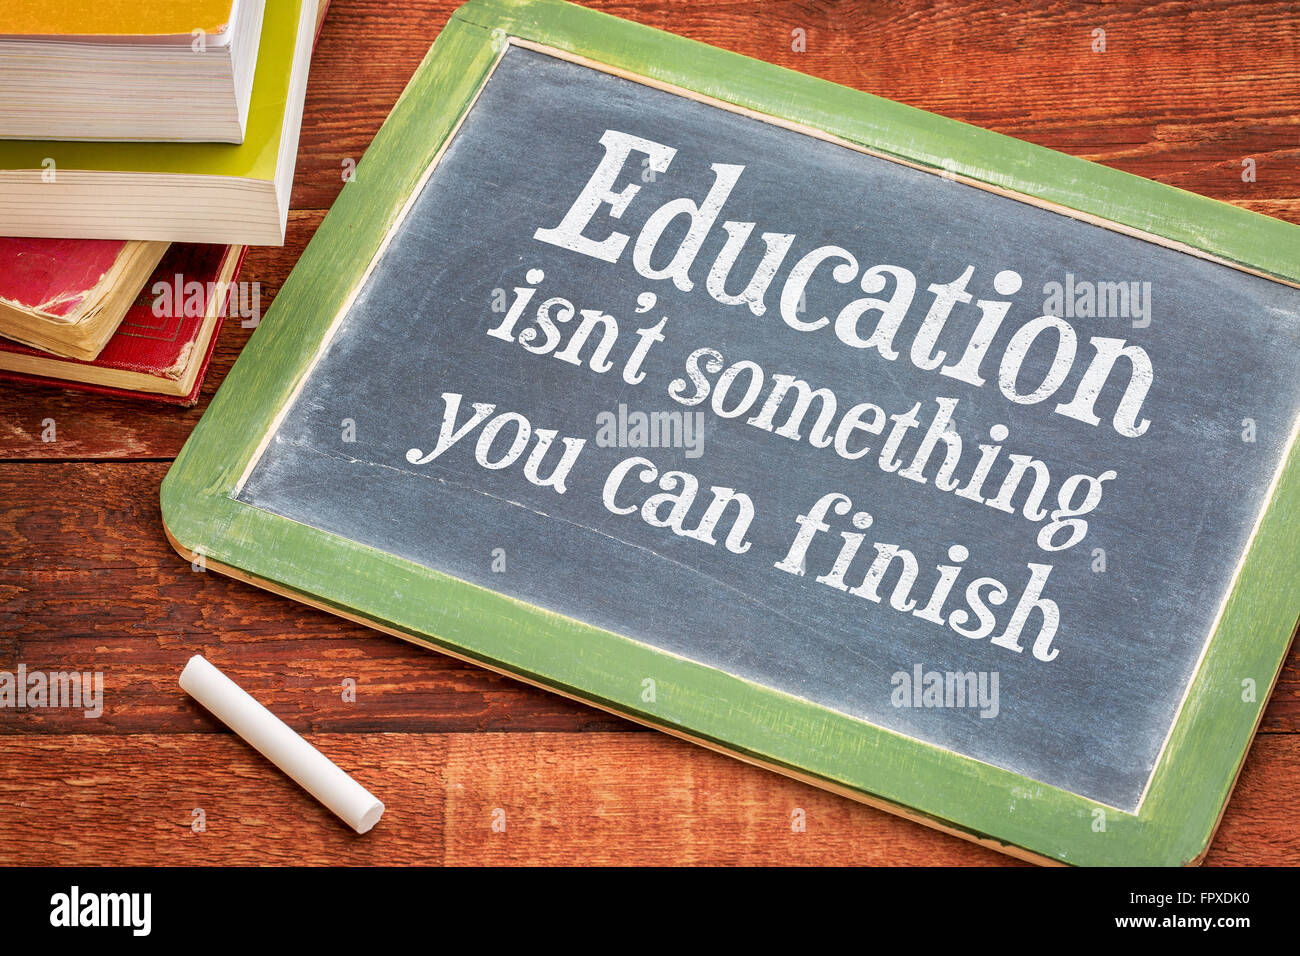 Bildung ist nicht etwas, was Sie beenden kann - motivierende Erinnerung auf einer Schiefertafel Tafel mit weißer Kreide und einen Stapel Bücher Stockfoto